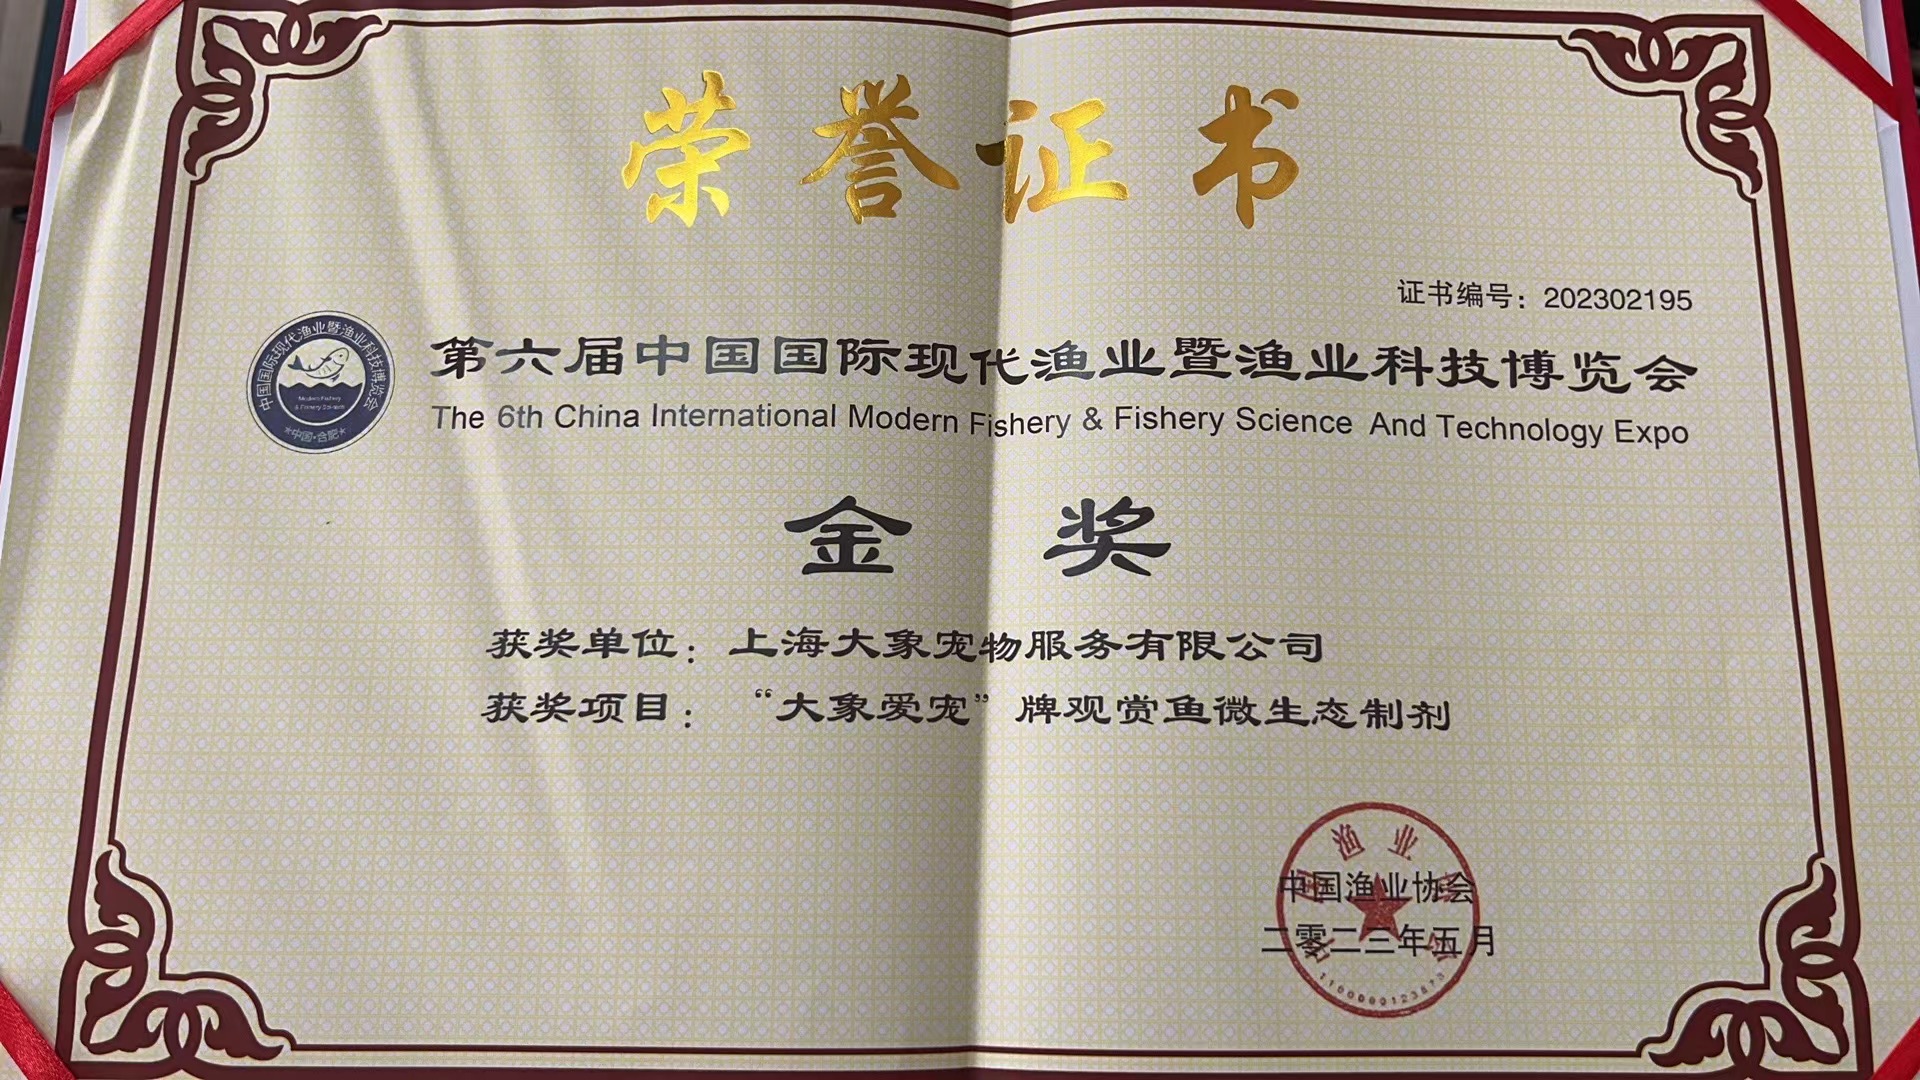 “大象愛寵”牌觀賞魚微生態制劑榮獲第六屆中國國際現代漁業暨漁業科技博覽會金獎